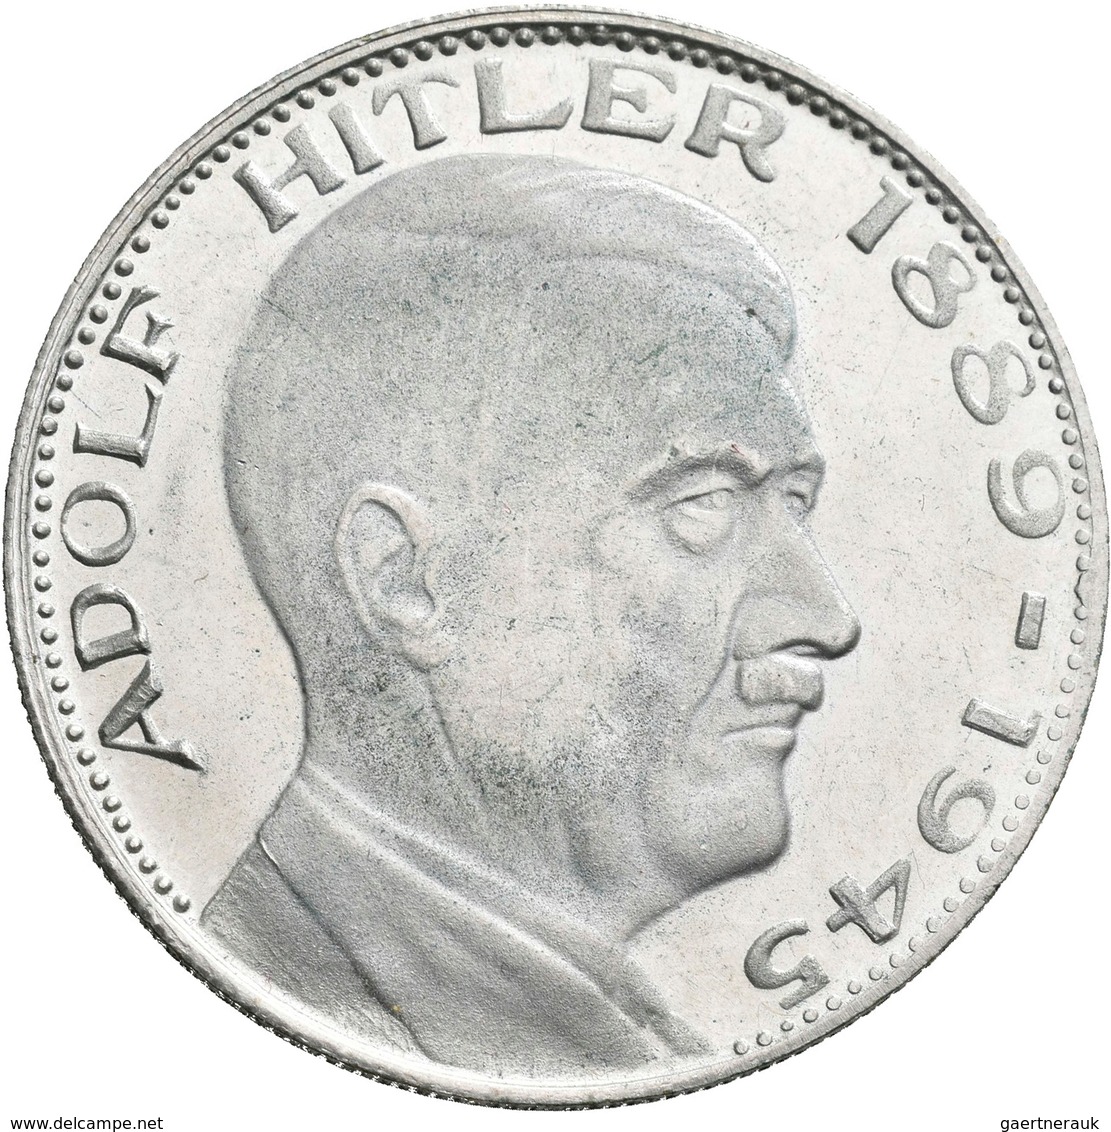 Drittes Reich: Lot 4 Medaillen mit Adolf Hitler, dabei: Probe 2 Mark 1938; Aluminiummedaille o.J. /